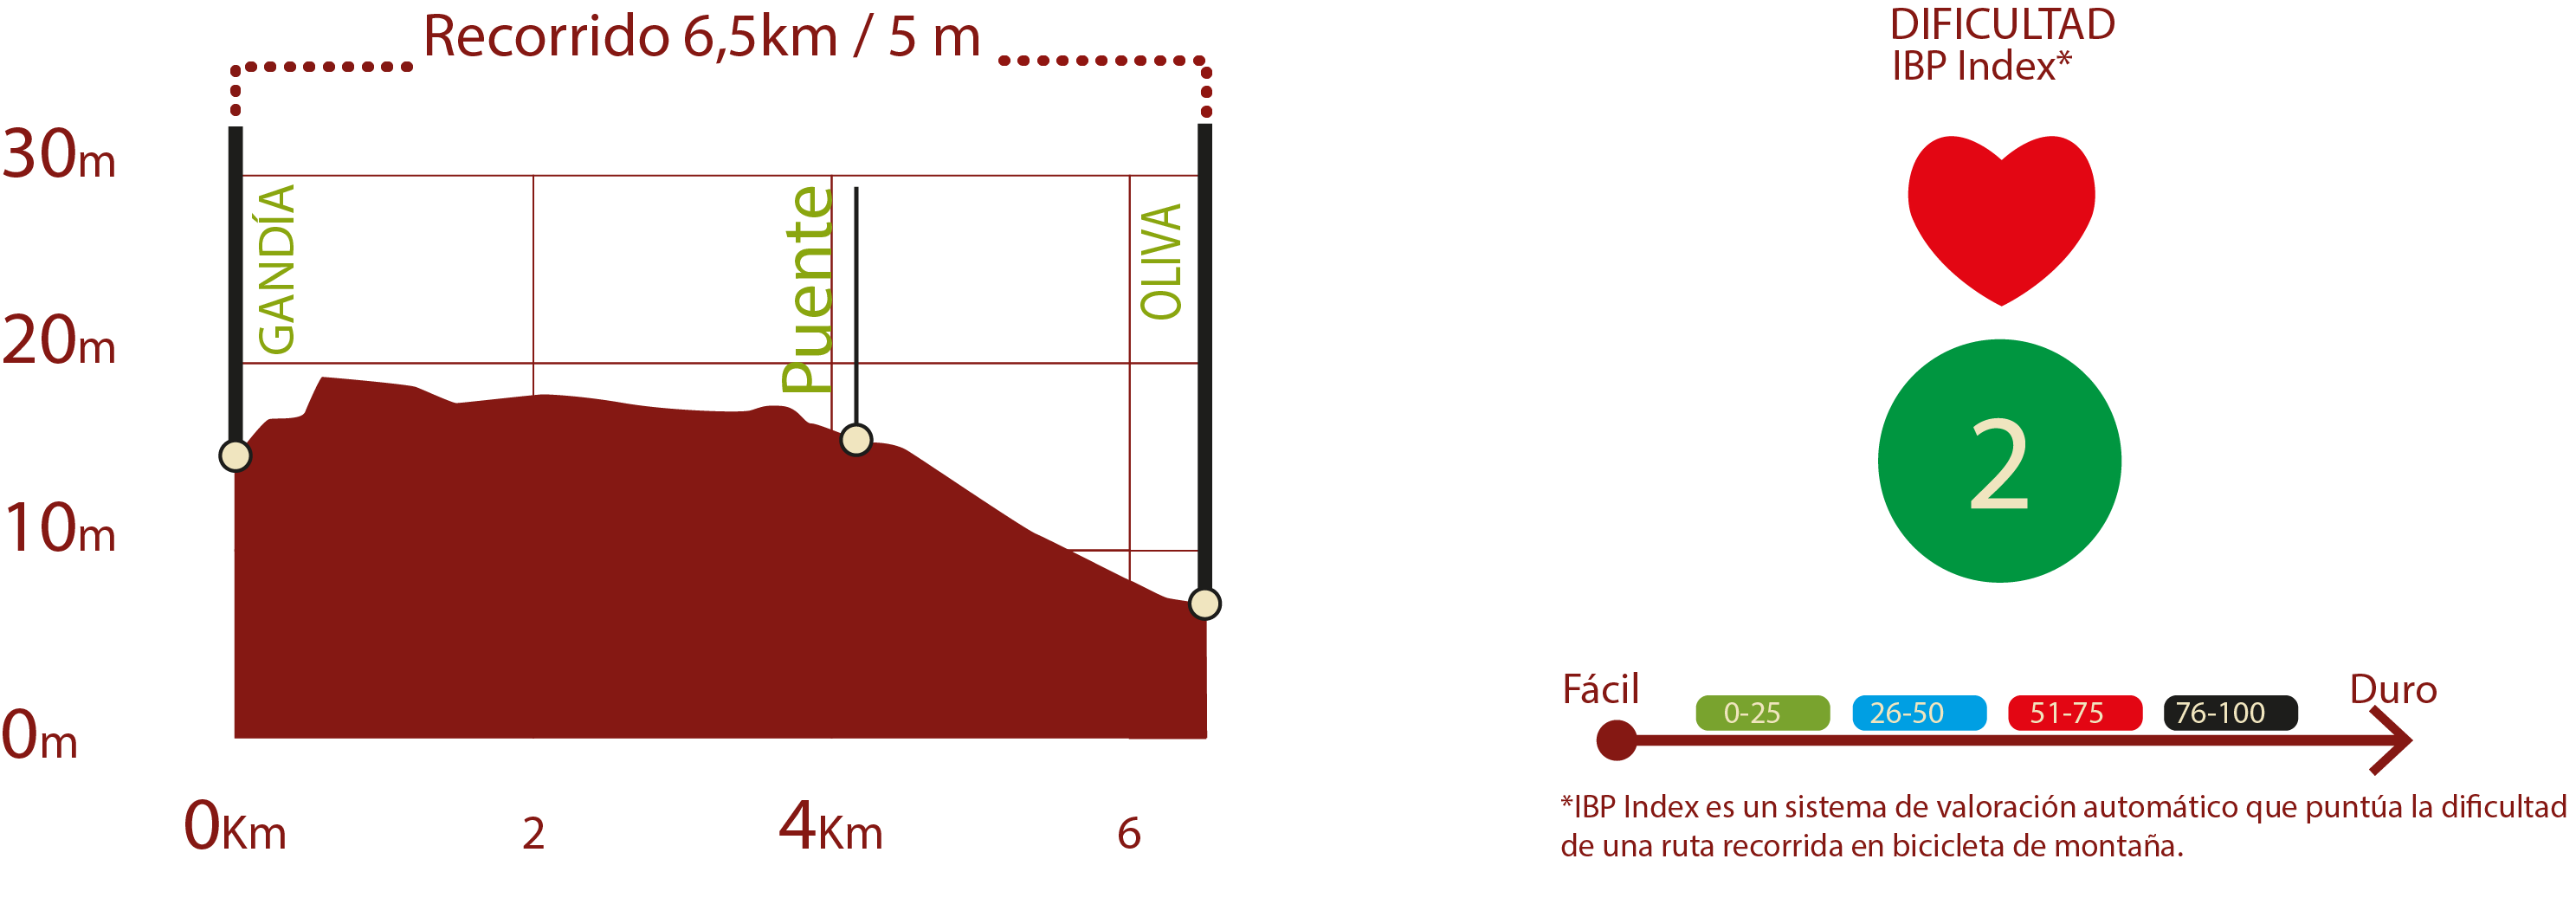 Perfil e IBP
Perfil del recorrido del CN de La Safor: 6,5 km / Desnivel de subida 5 m
IBP 2: Fácil

